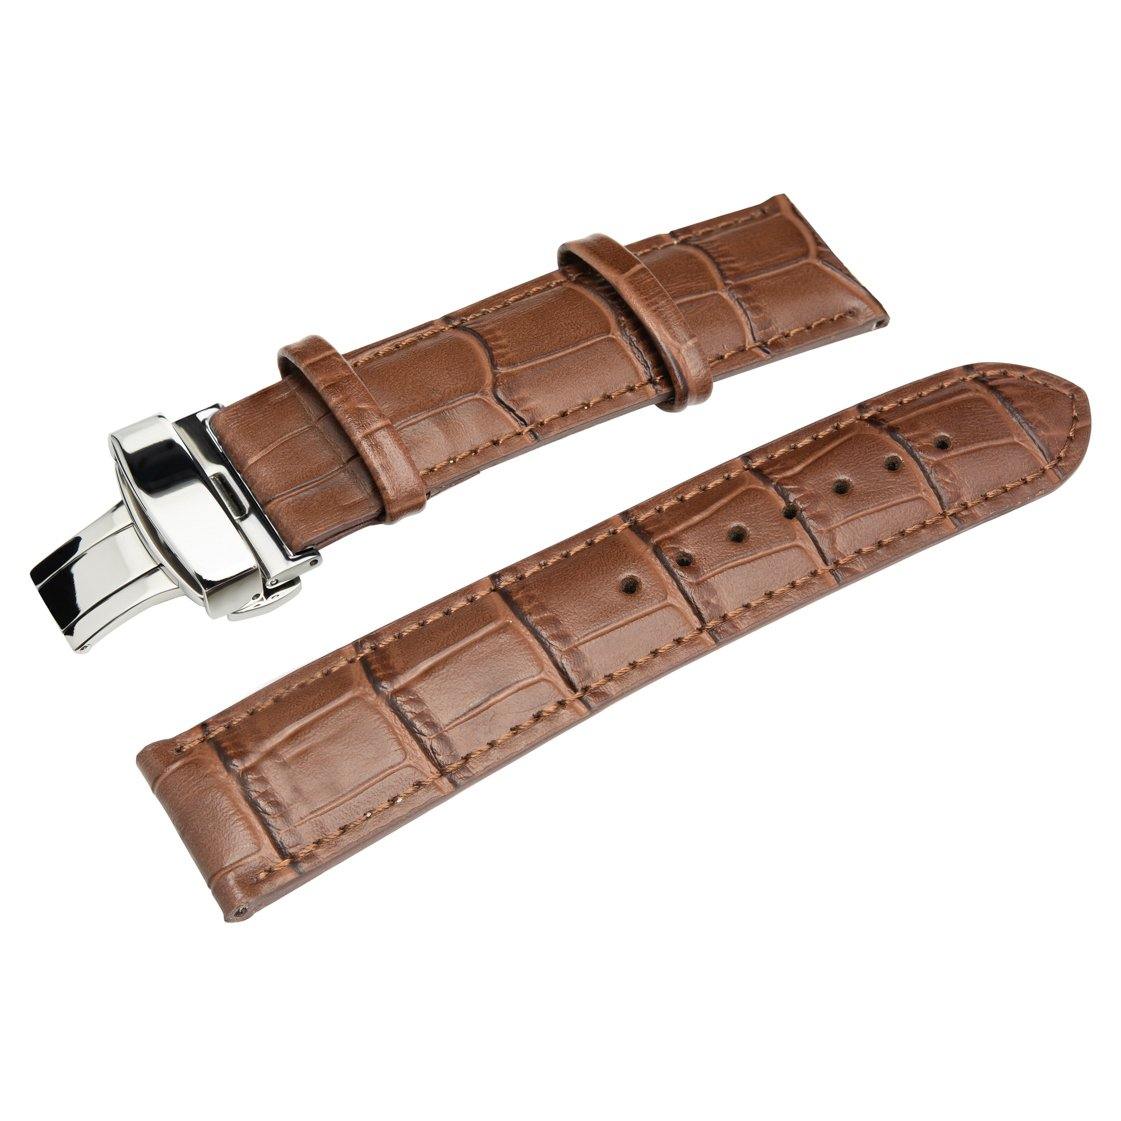 SÖNER HERITAGE A - Alligator strap in dark brown leather SÖNER Watch straps.